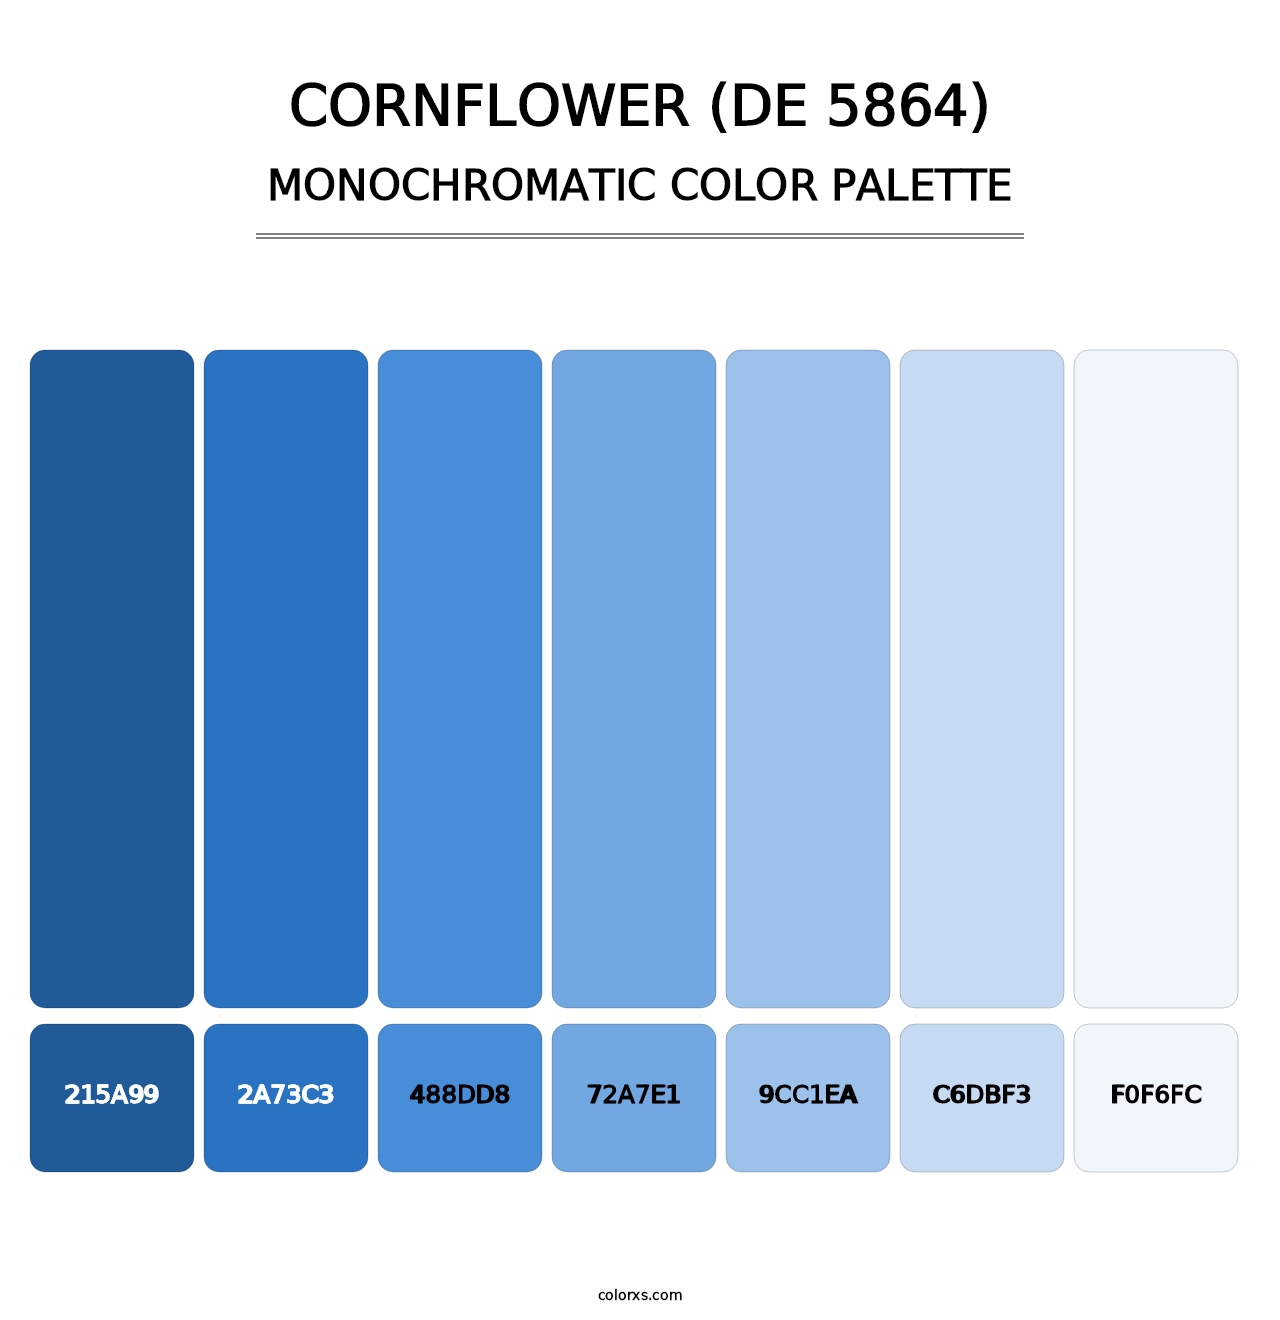 Cornflower (DE 5864) - Monochromatic Color Palette